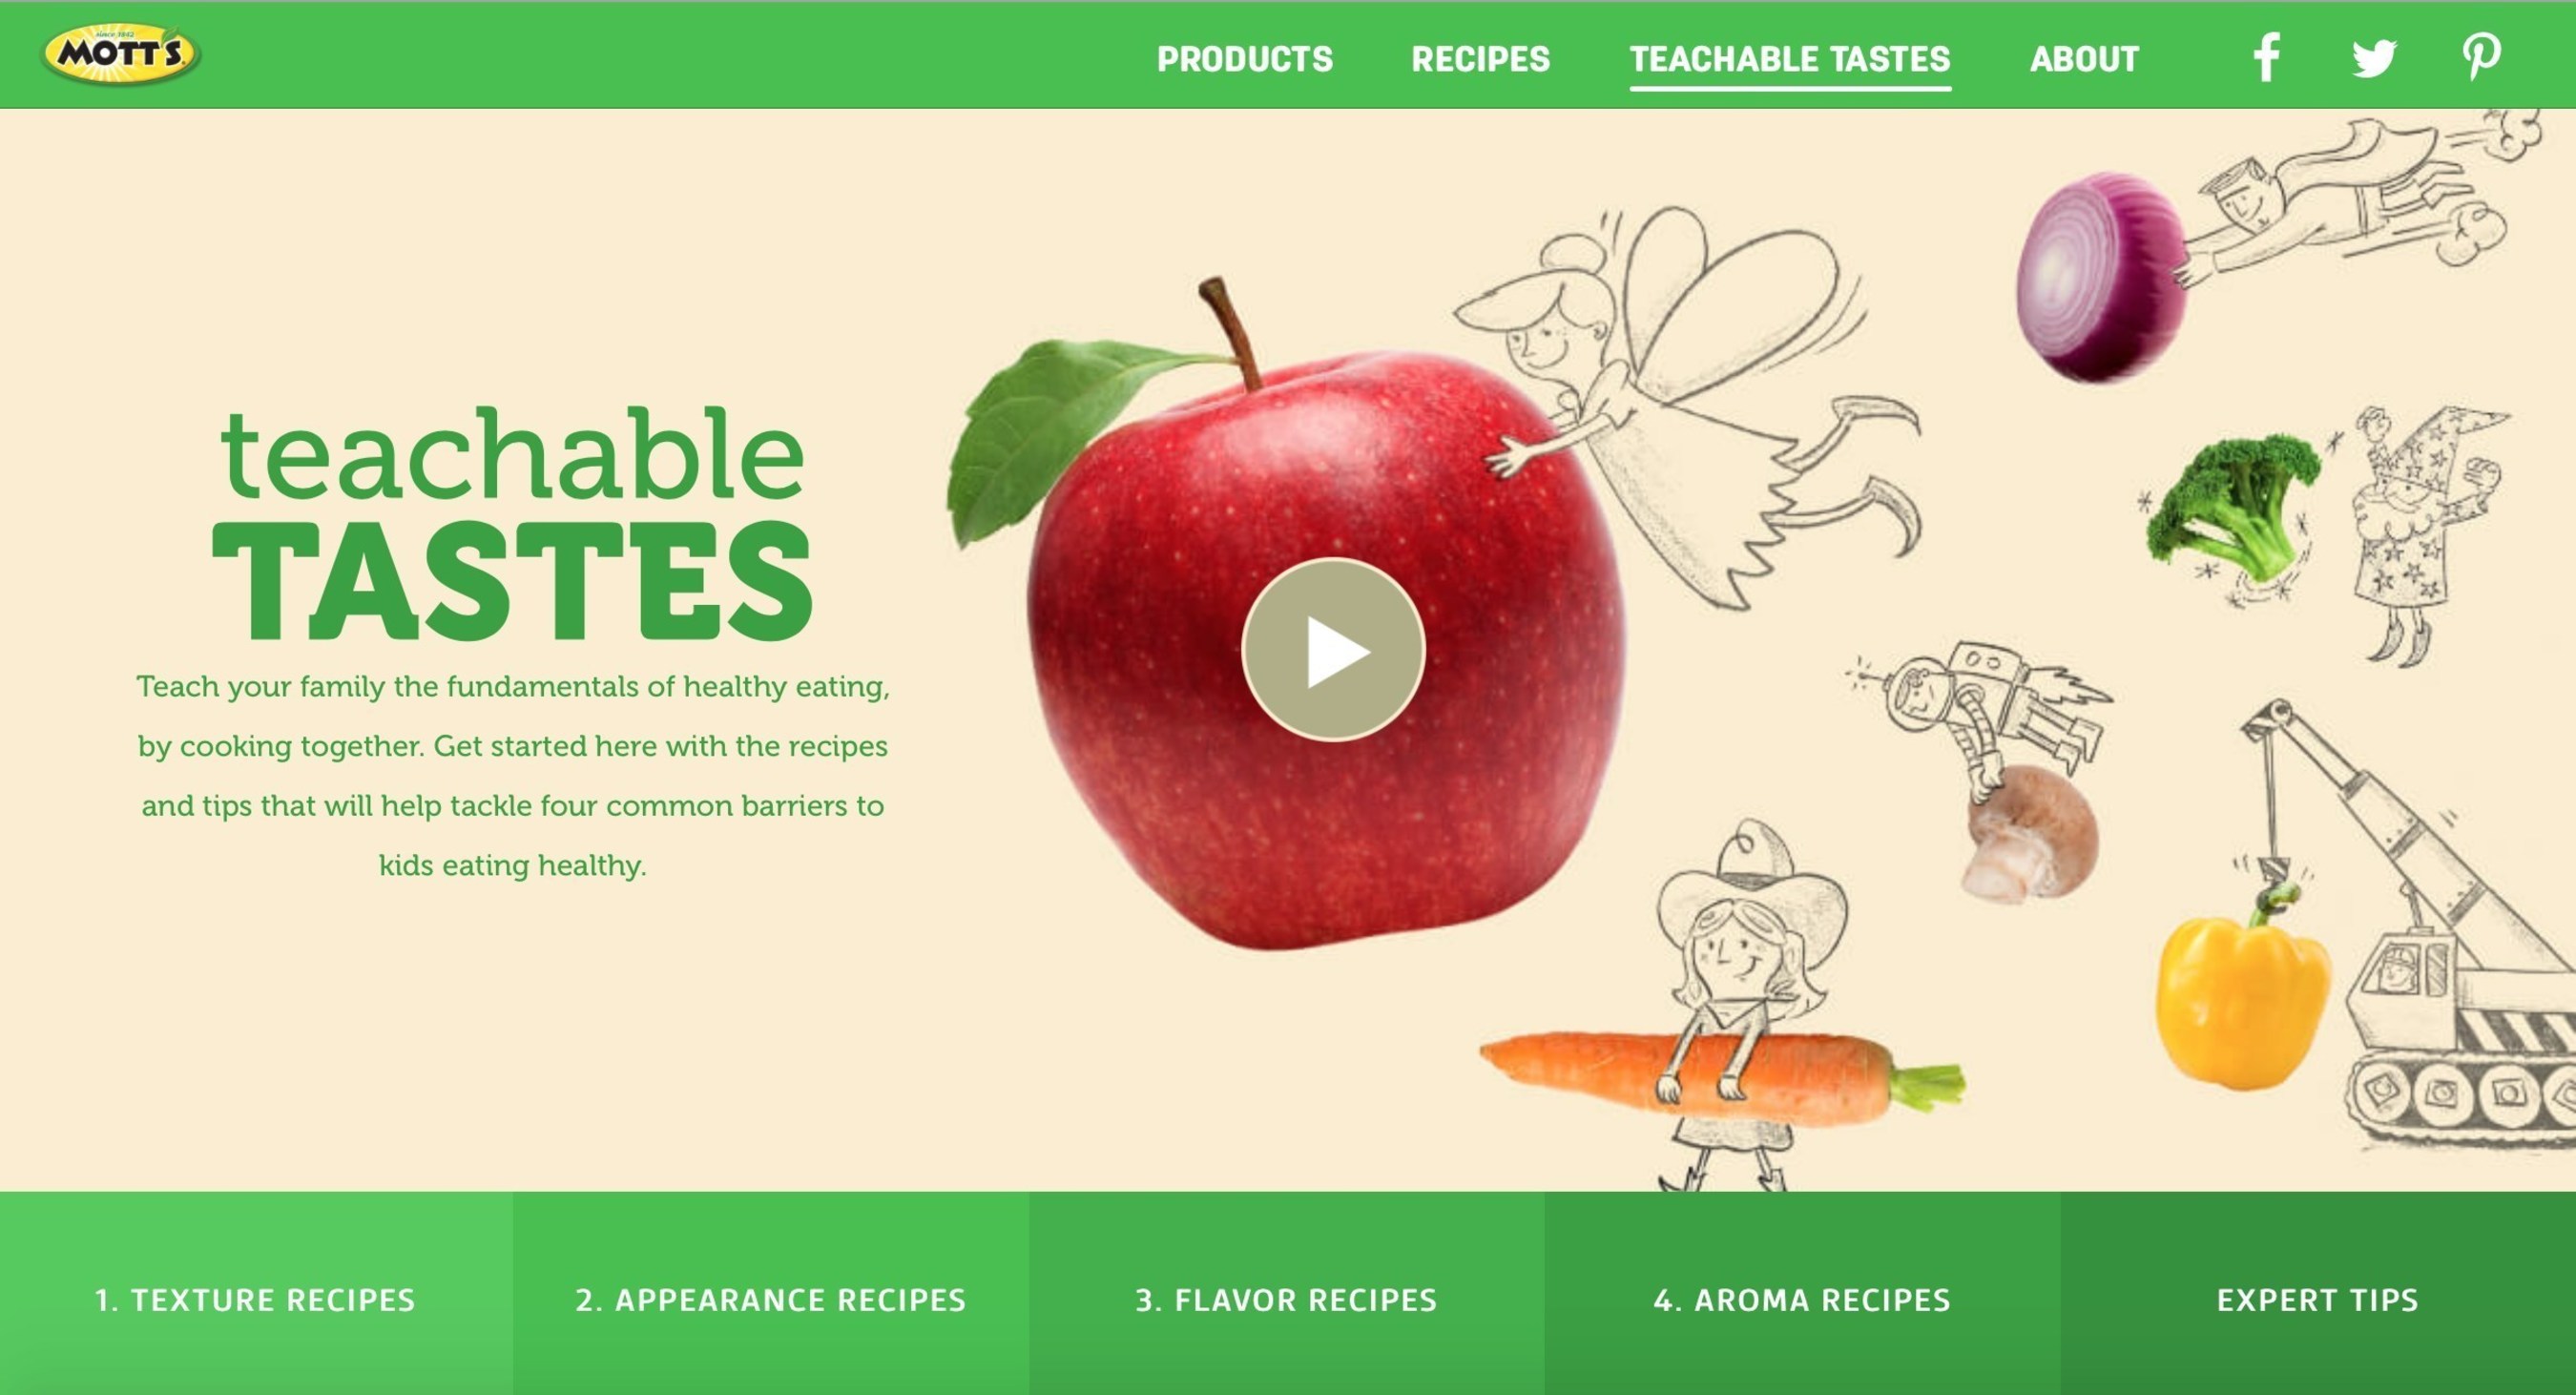 Mott's New Teachable Tastes Website